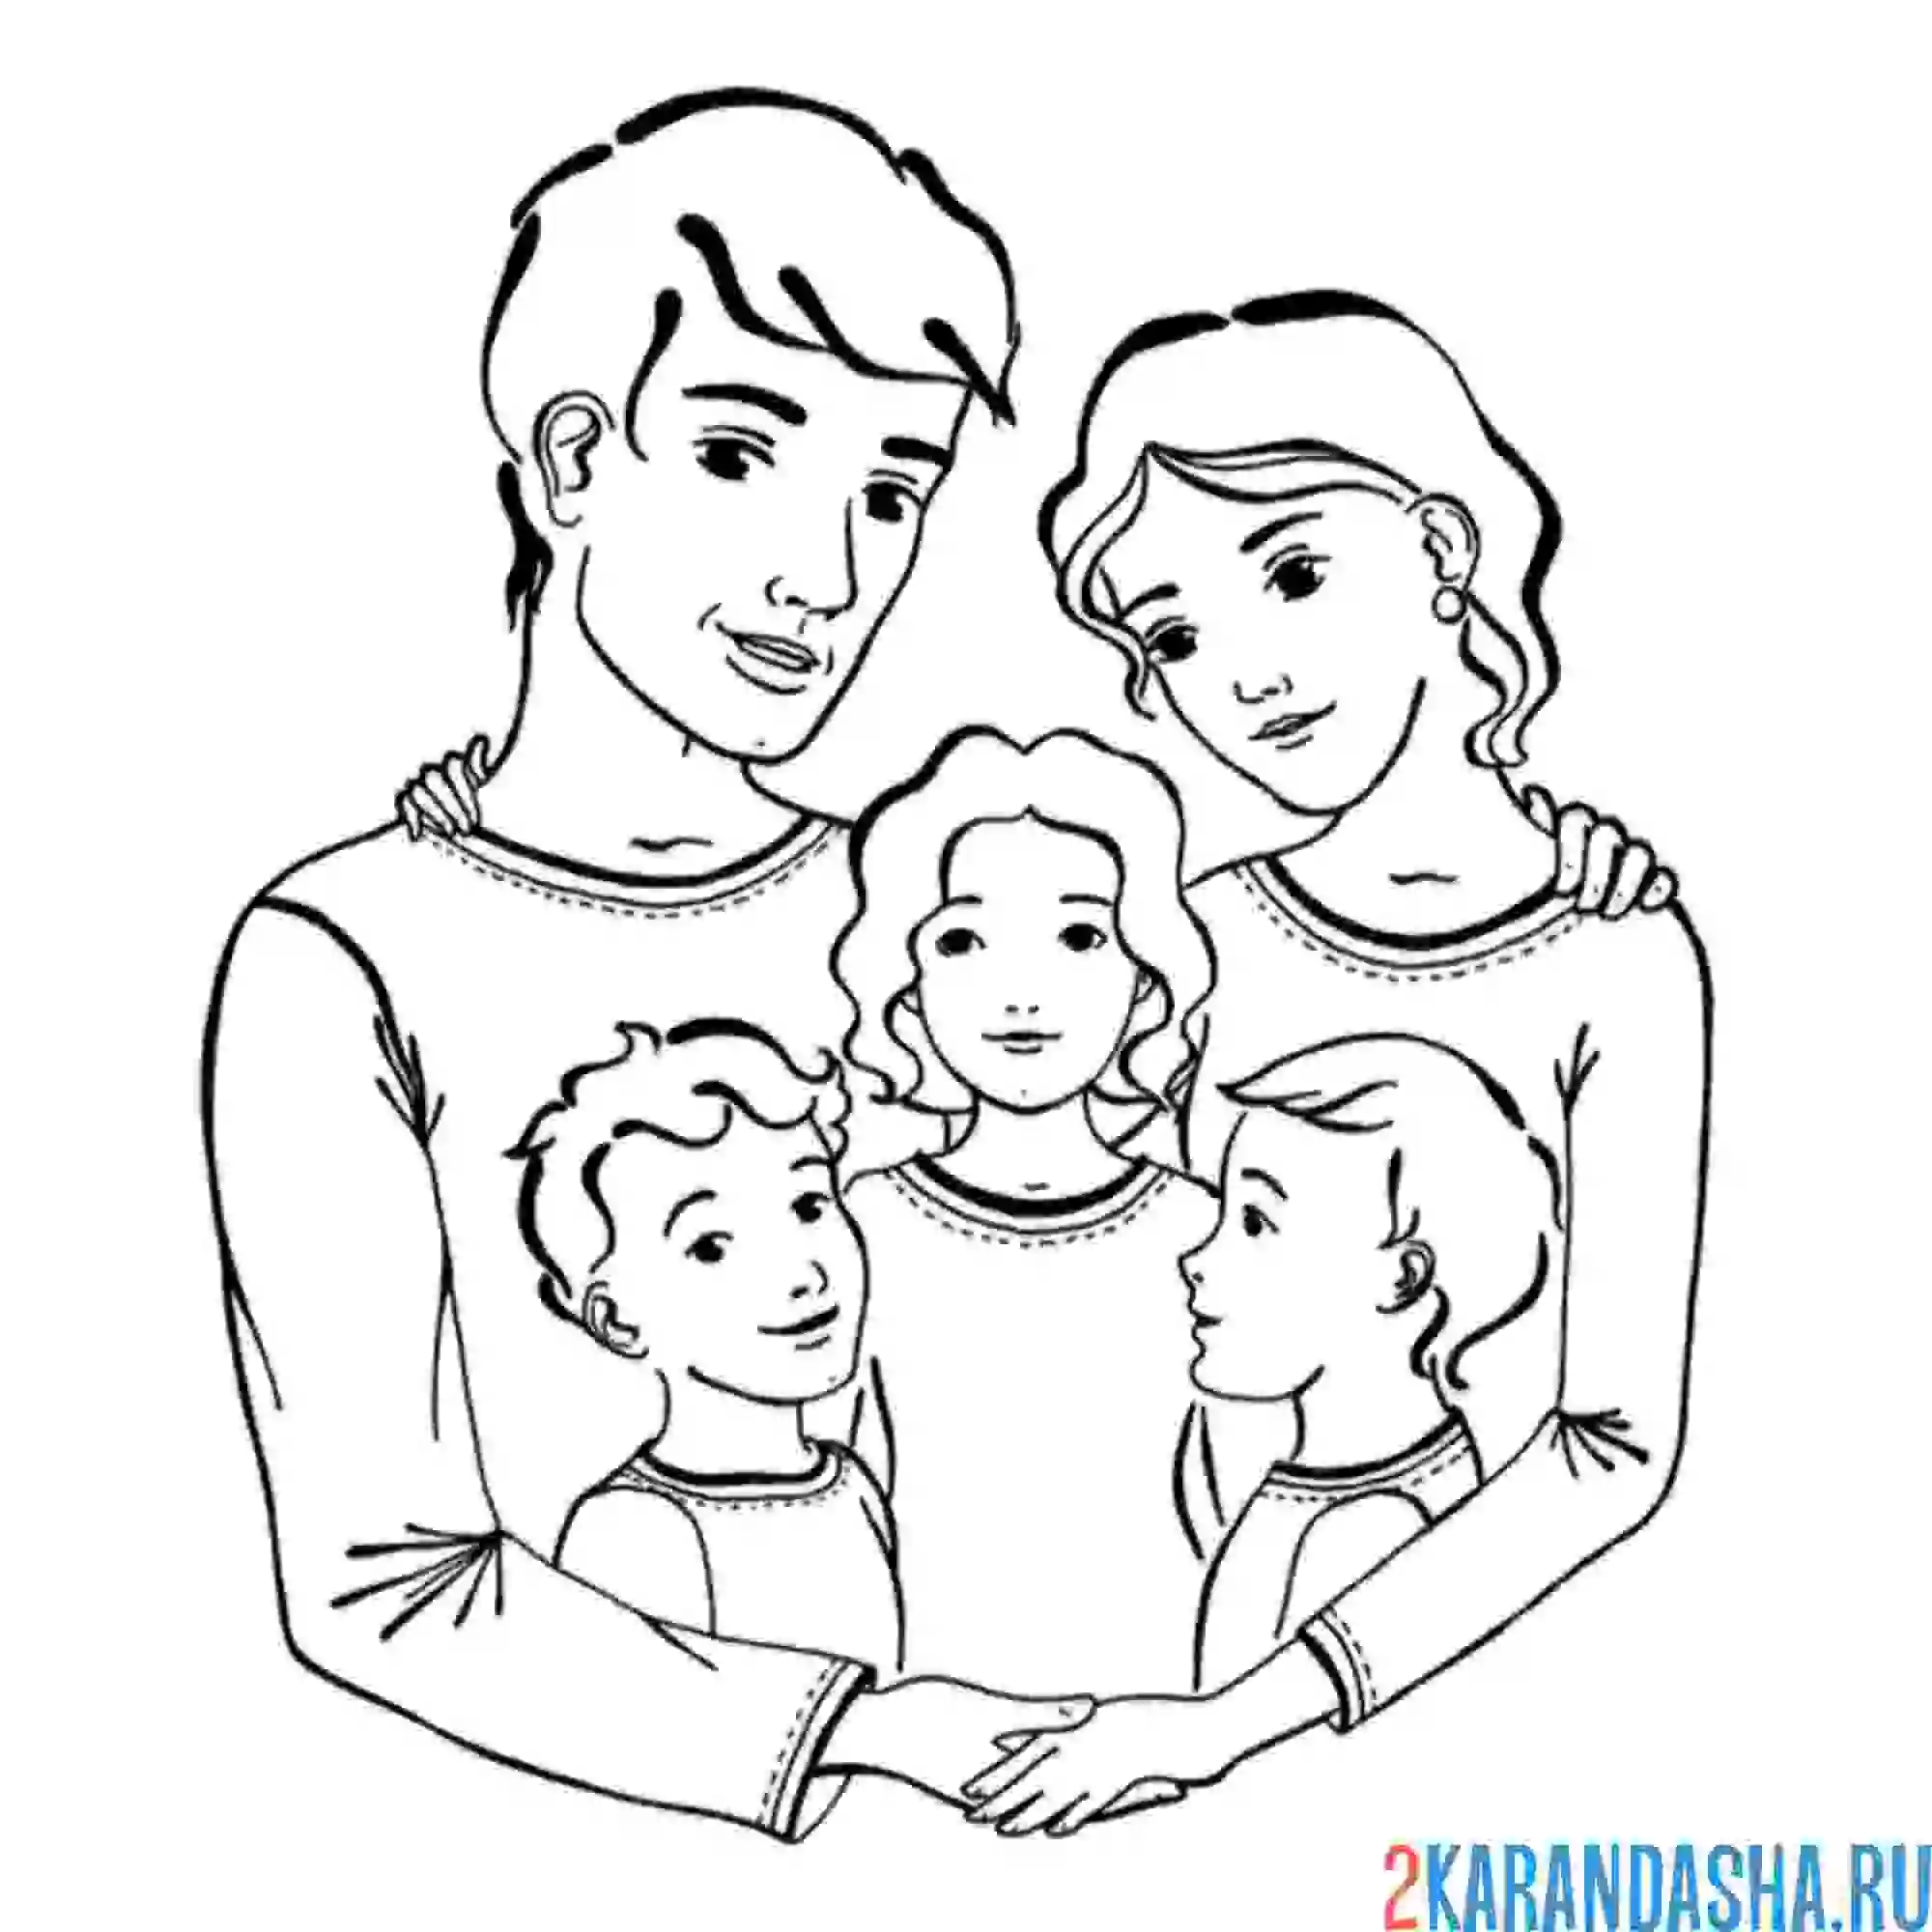 Семья кунгурцевых состоящая из 4 человек мама